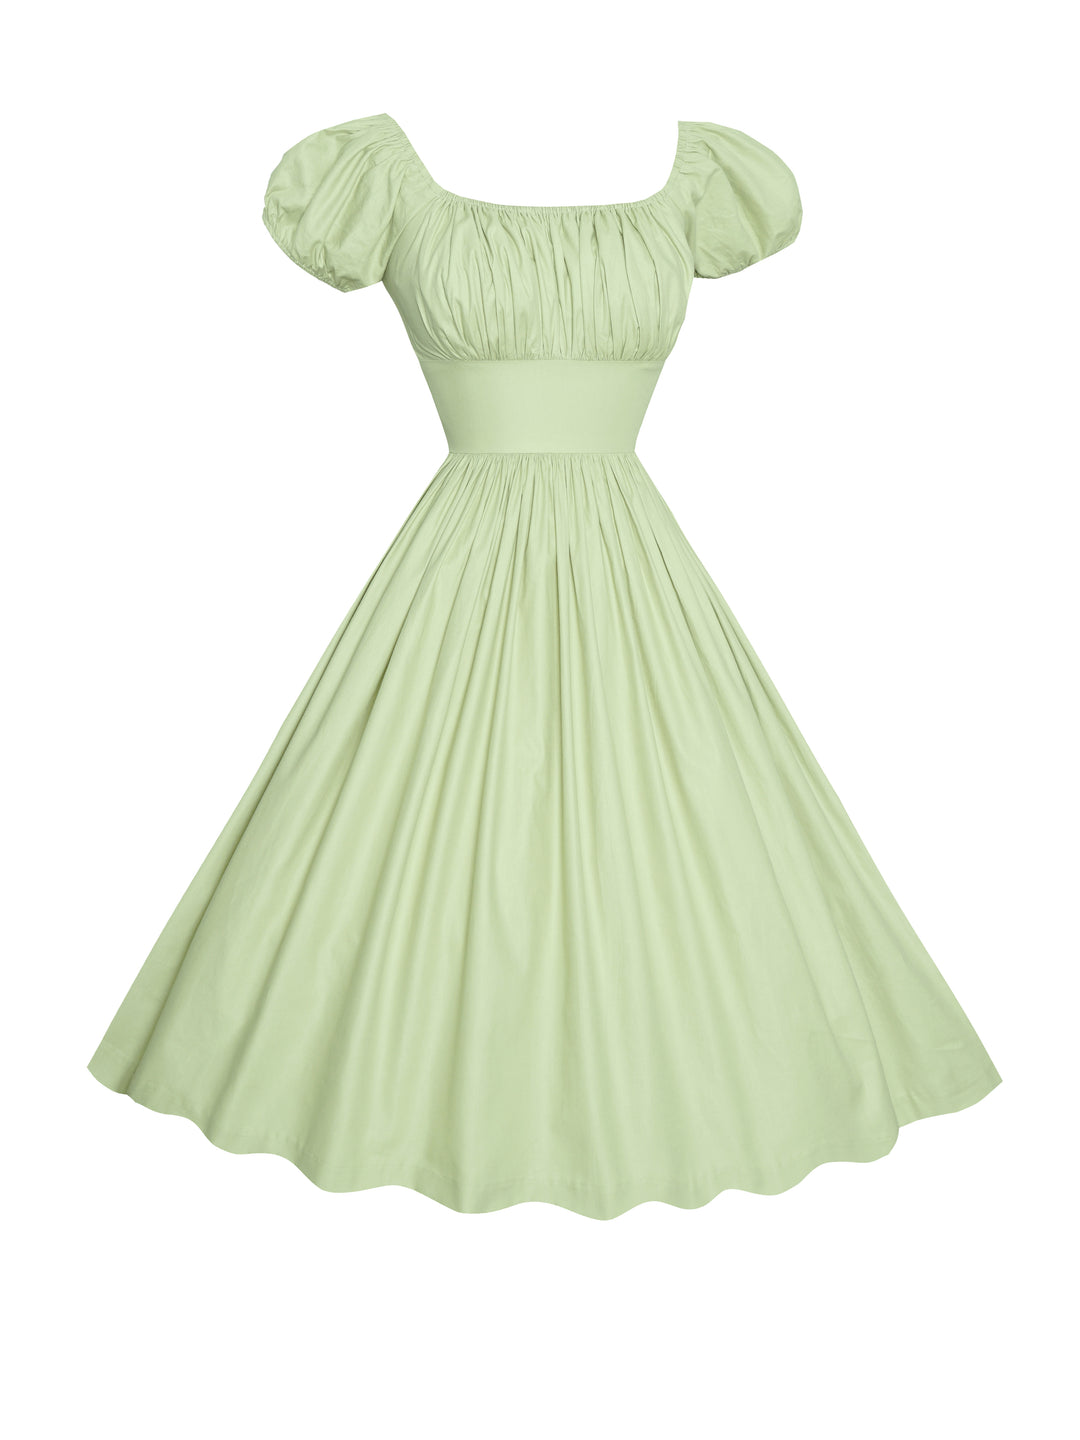 MTO - Loretta Dress in Melon Green Cotton